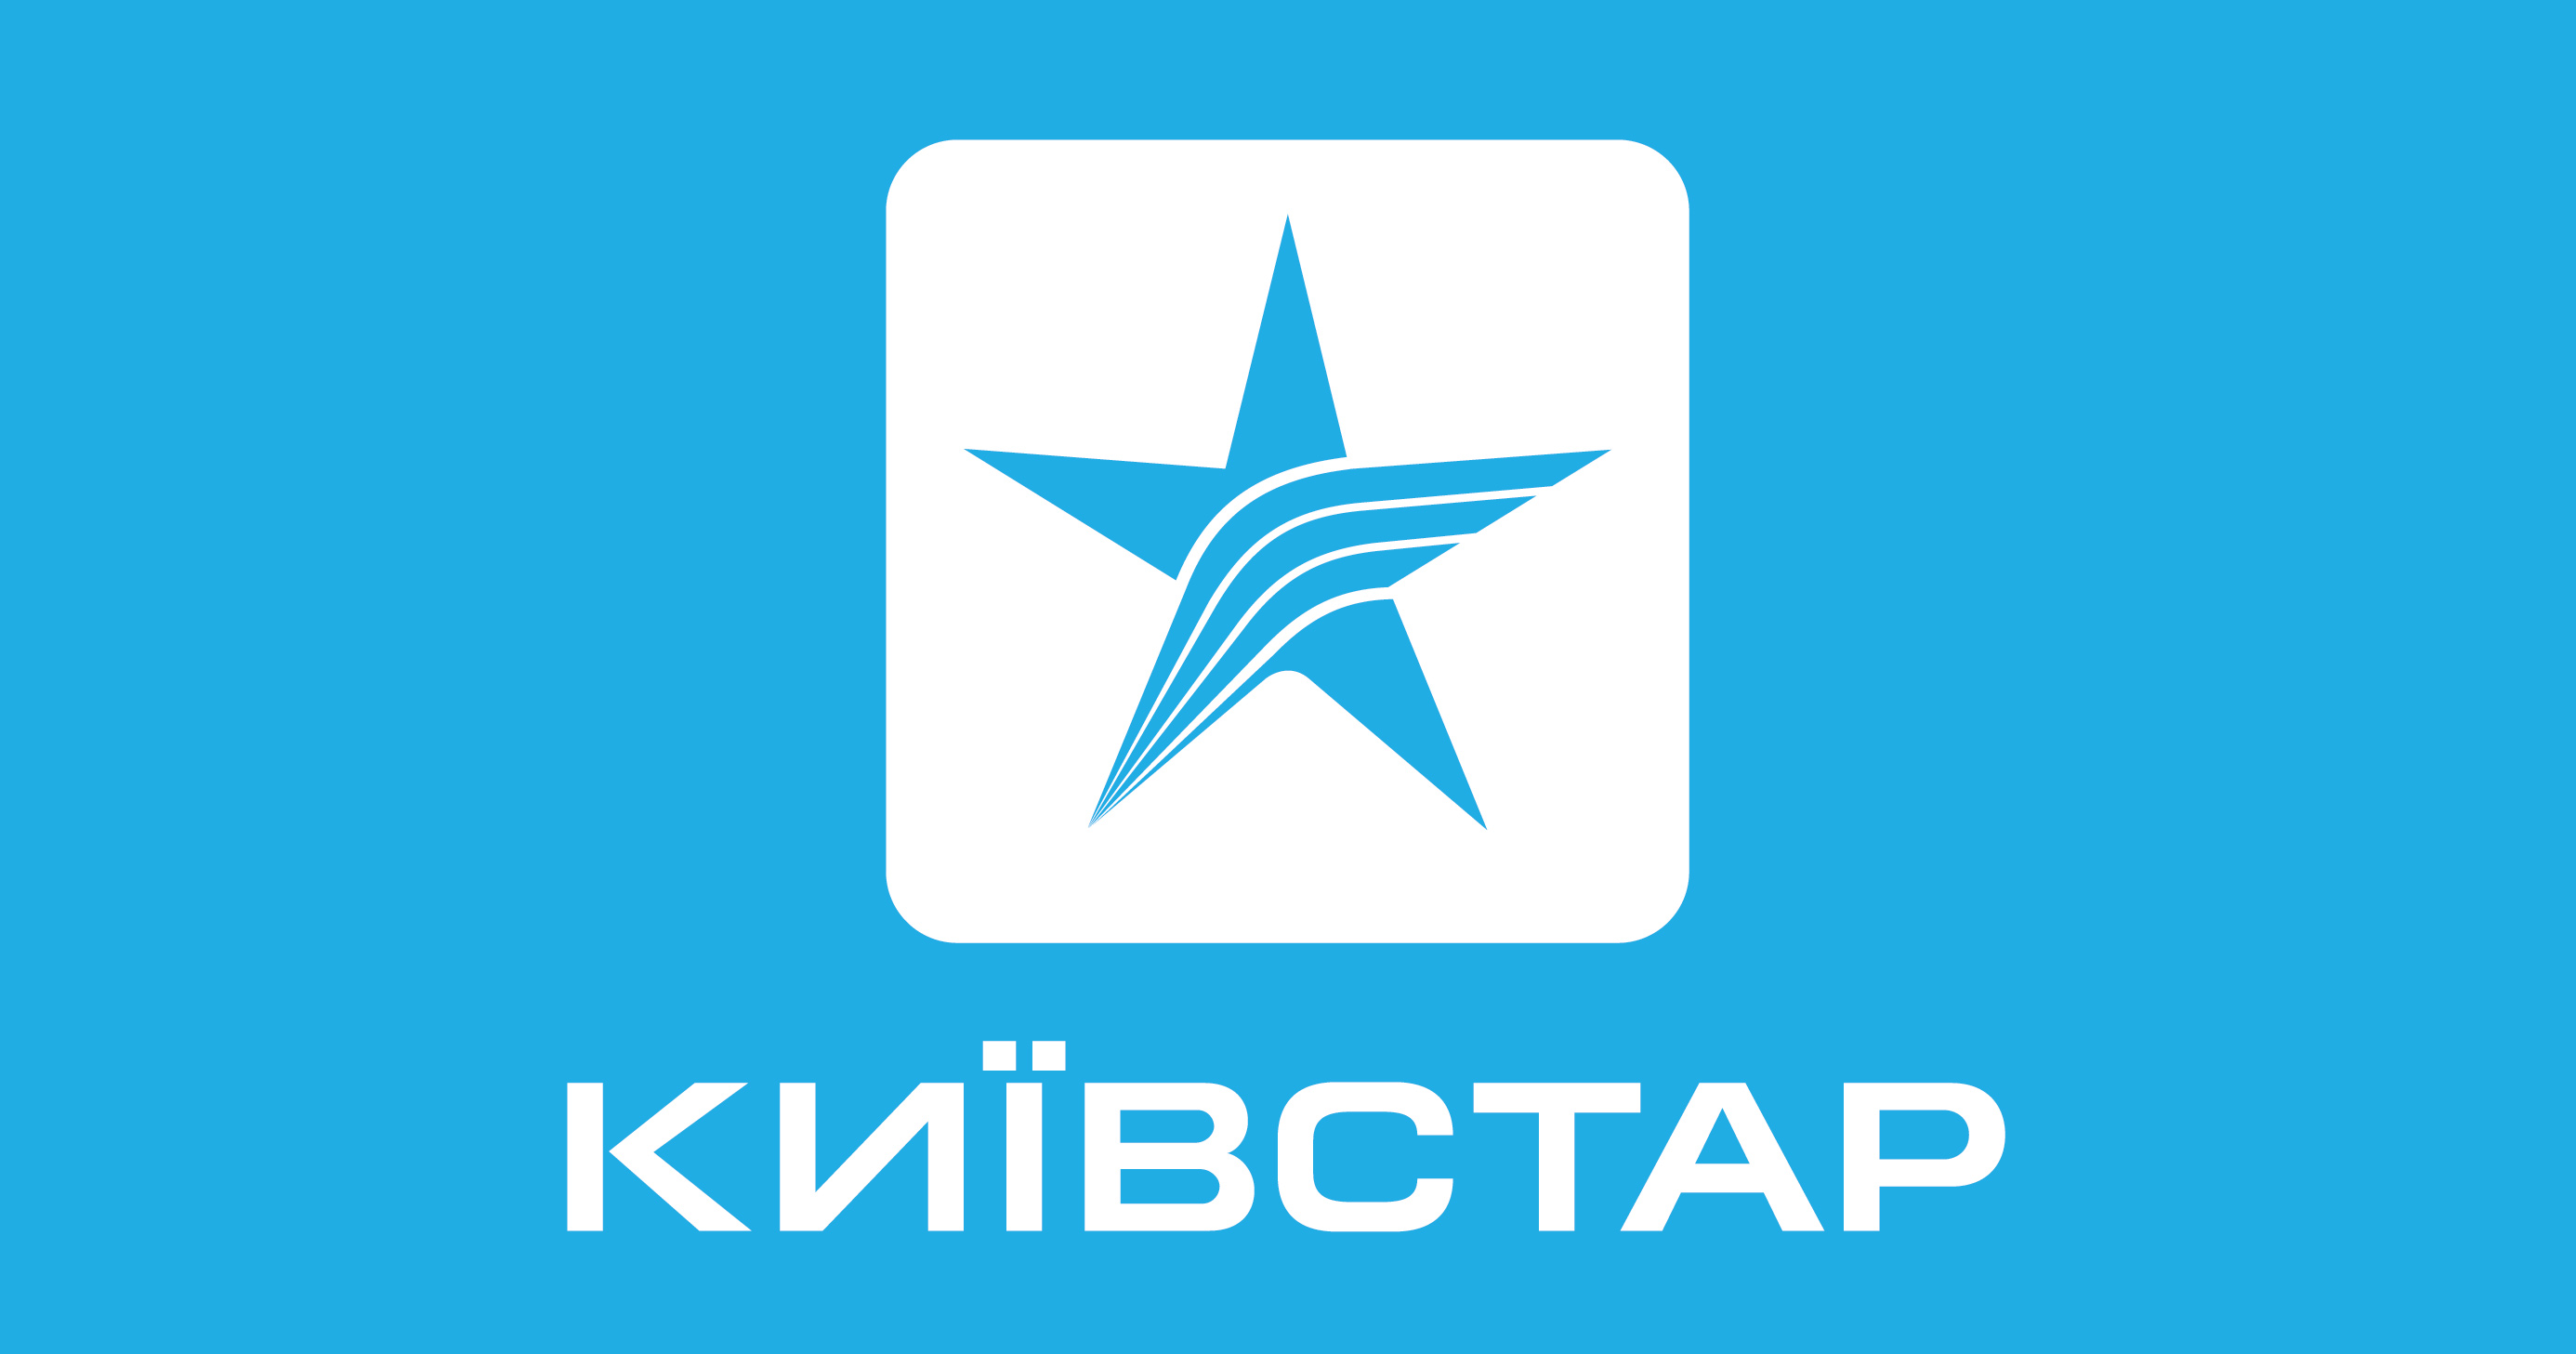 Куди вже більше: Київстар піднімає свої тарифи